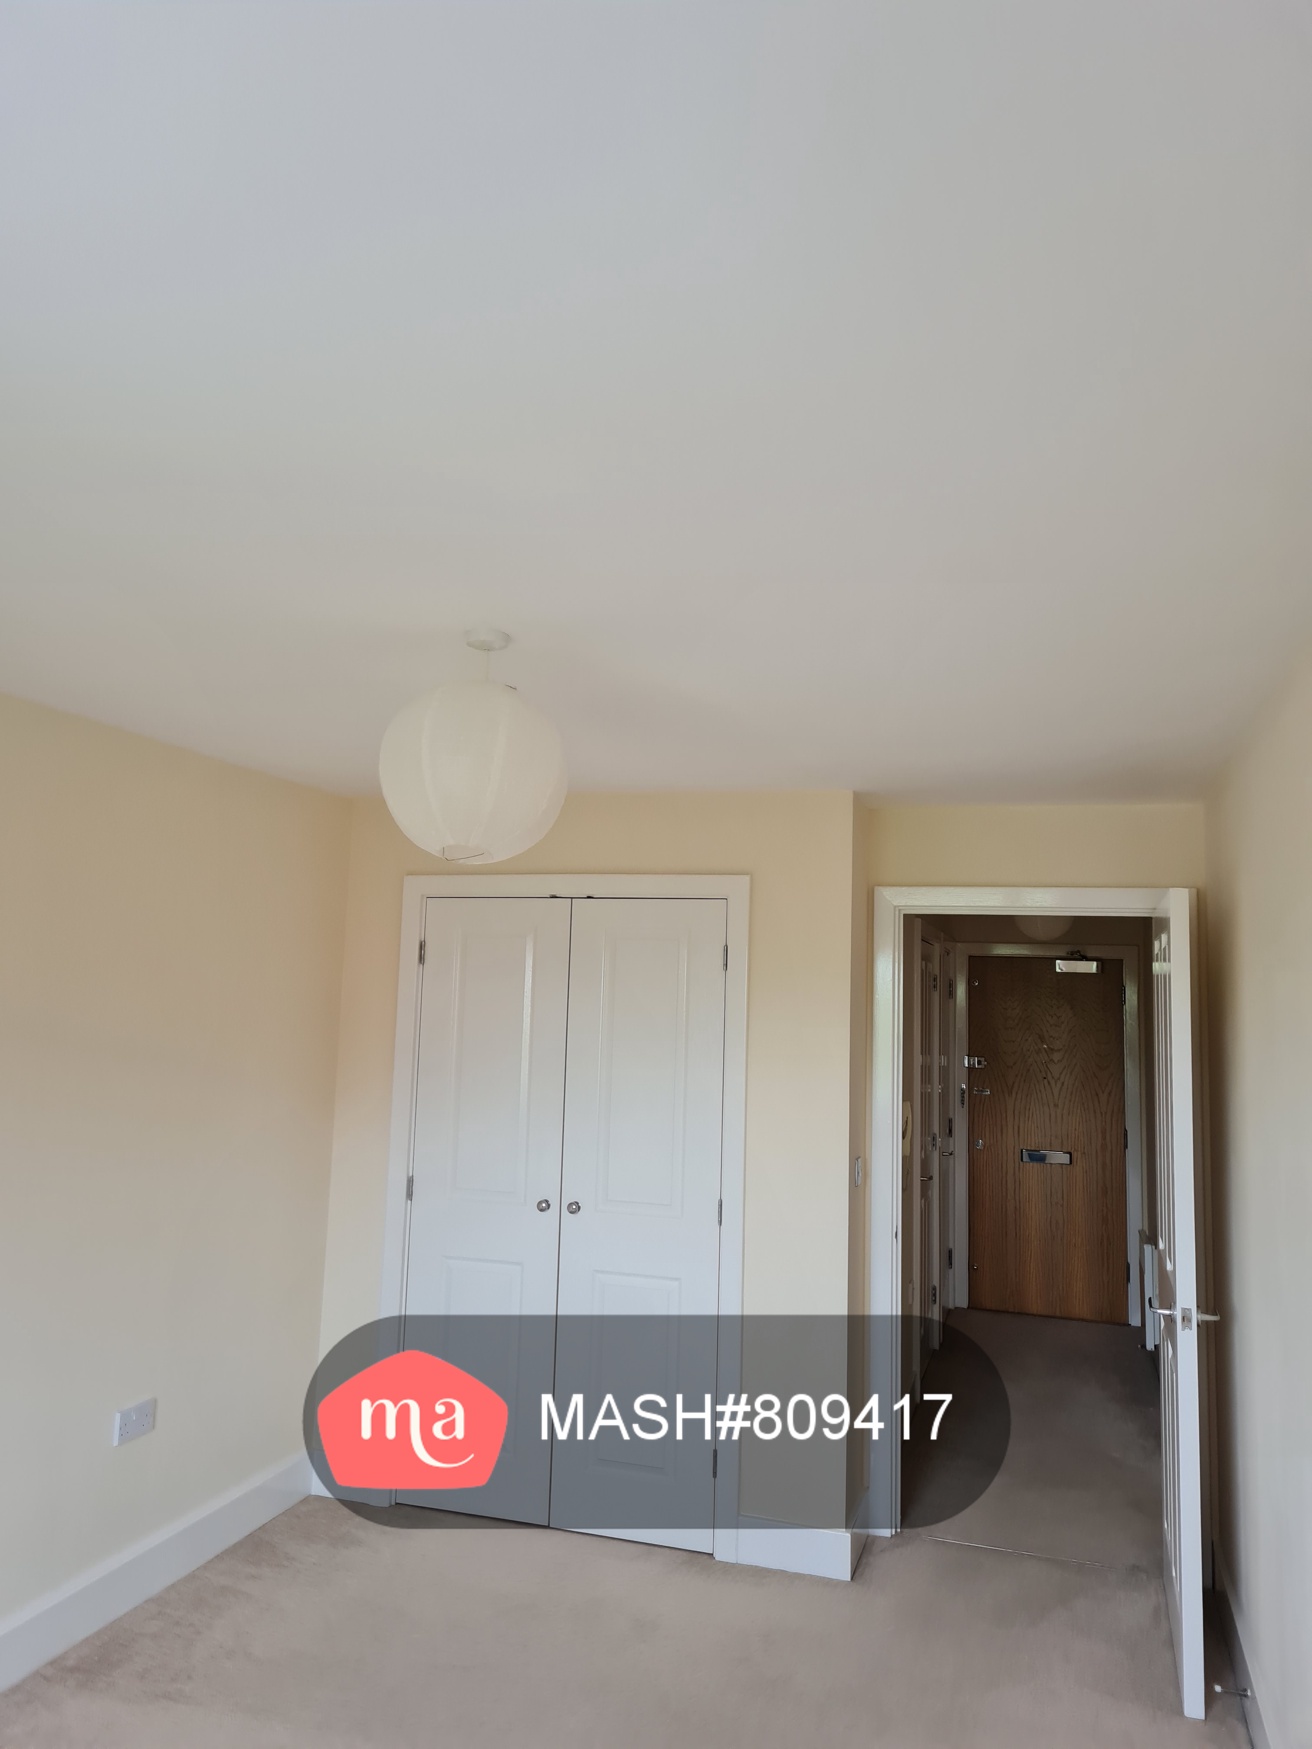 1 Bedroom Flat to rent in Aylesbury - Mashroom